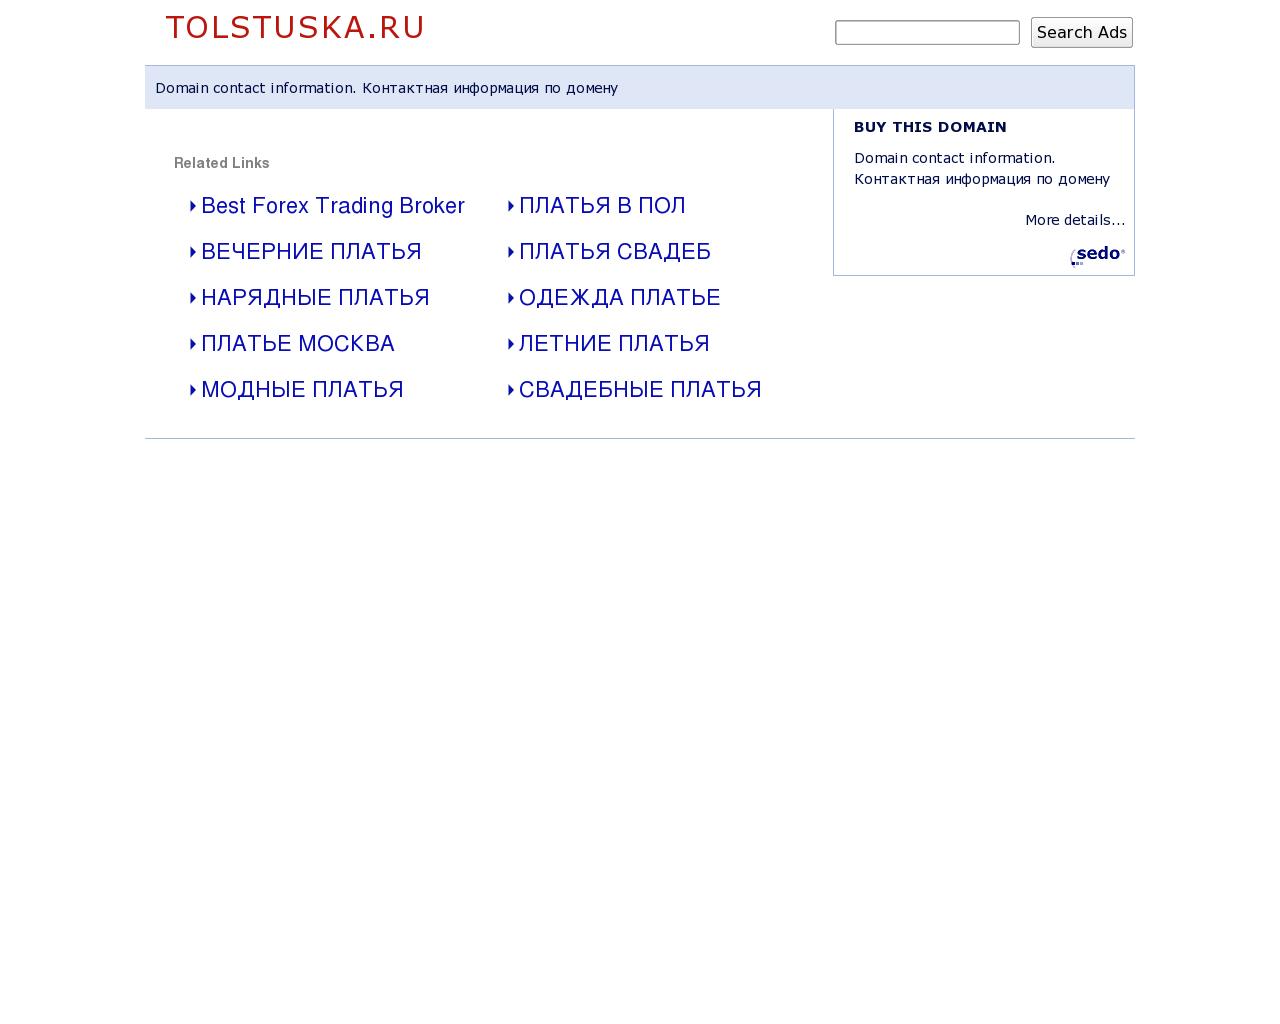 Изображение сайта tolstuska.ru в разрешении 1280x1024